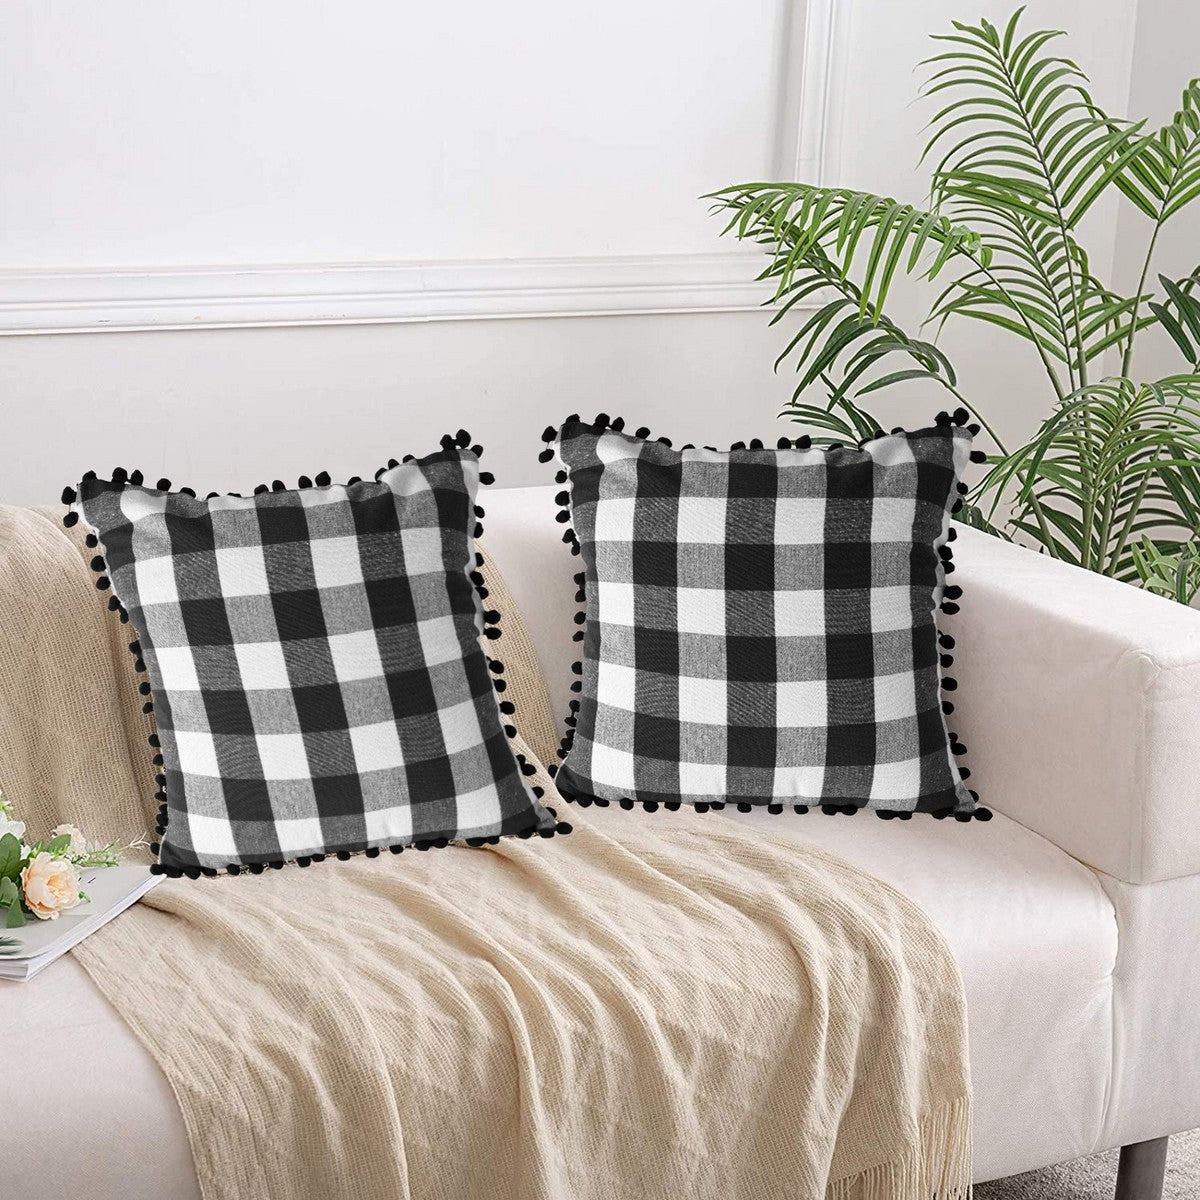 Lushomes Square Cushion Cover with Pom Pom, Cotton Sofa Pillow Cover Set of 2, 24x24 Inch, Big Checks, Black and White Checks, Pillow Cushions Covers (Pack of 2, 60x60 Cms)